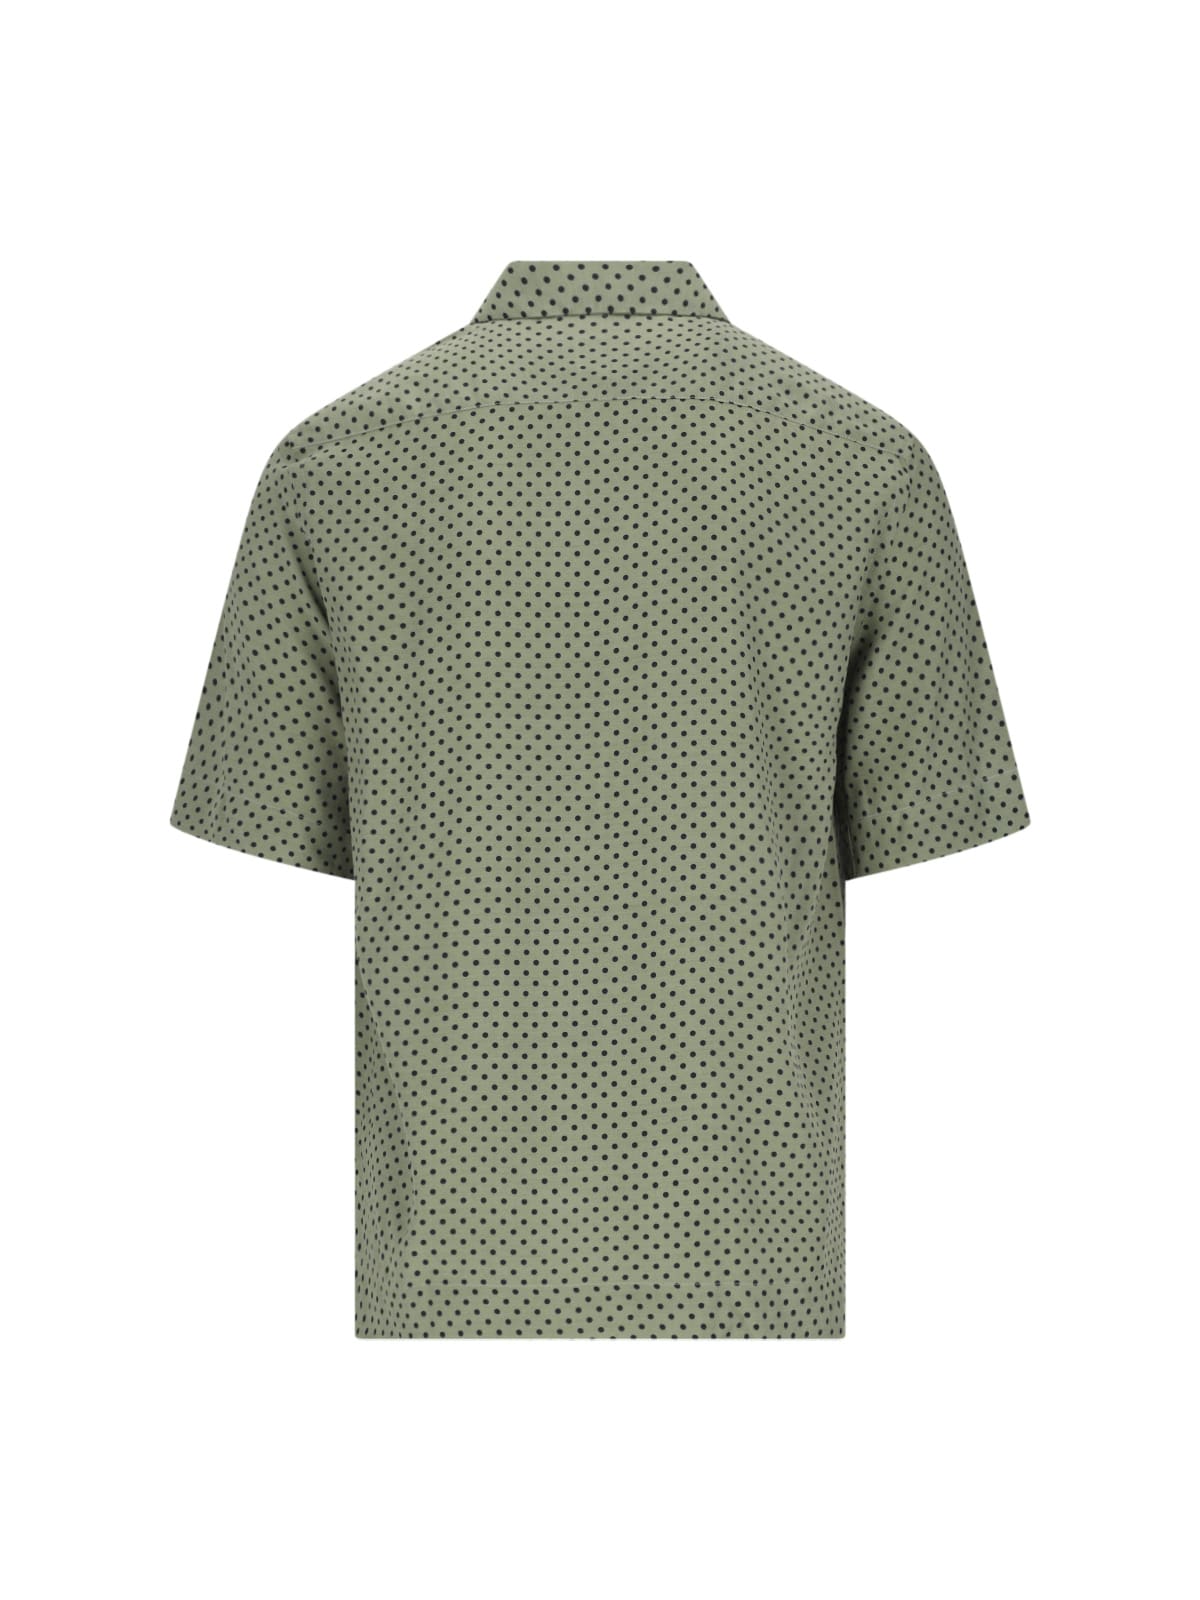 Shop Paul Smith Polka Dot Shirt In Green